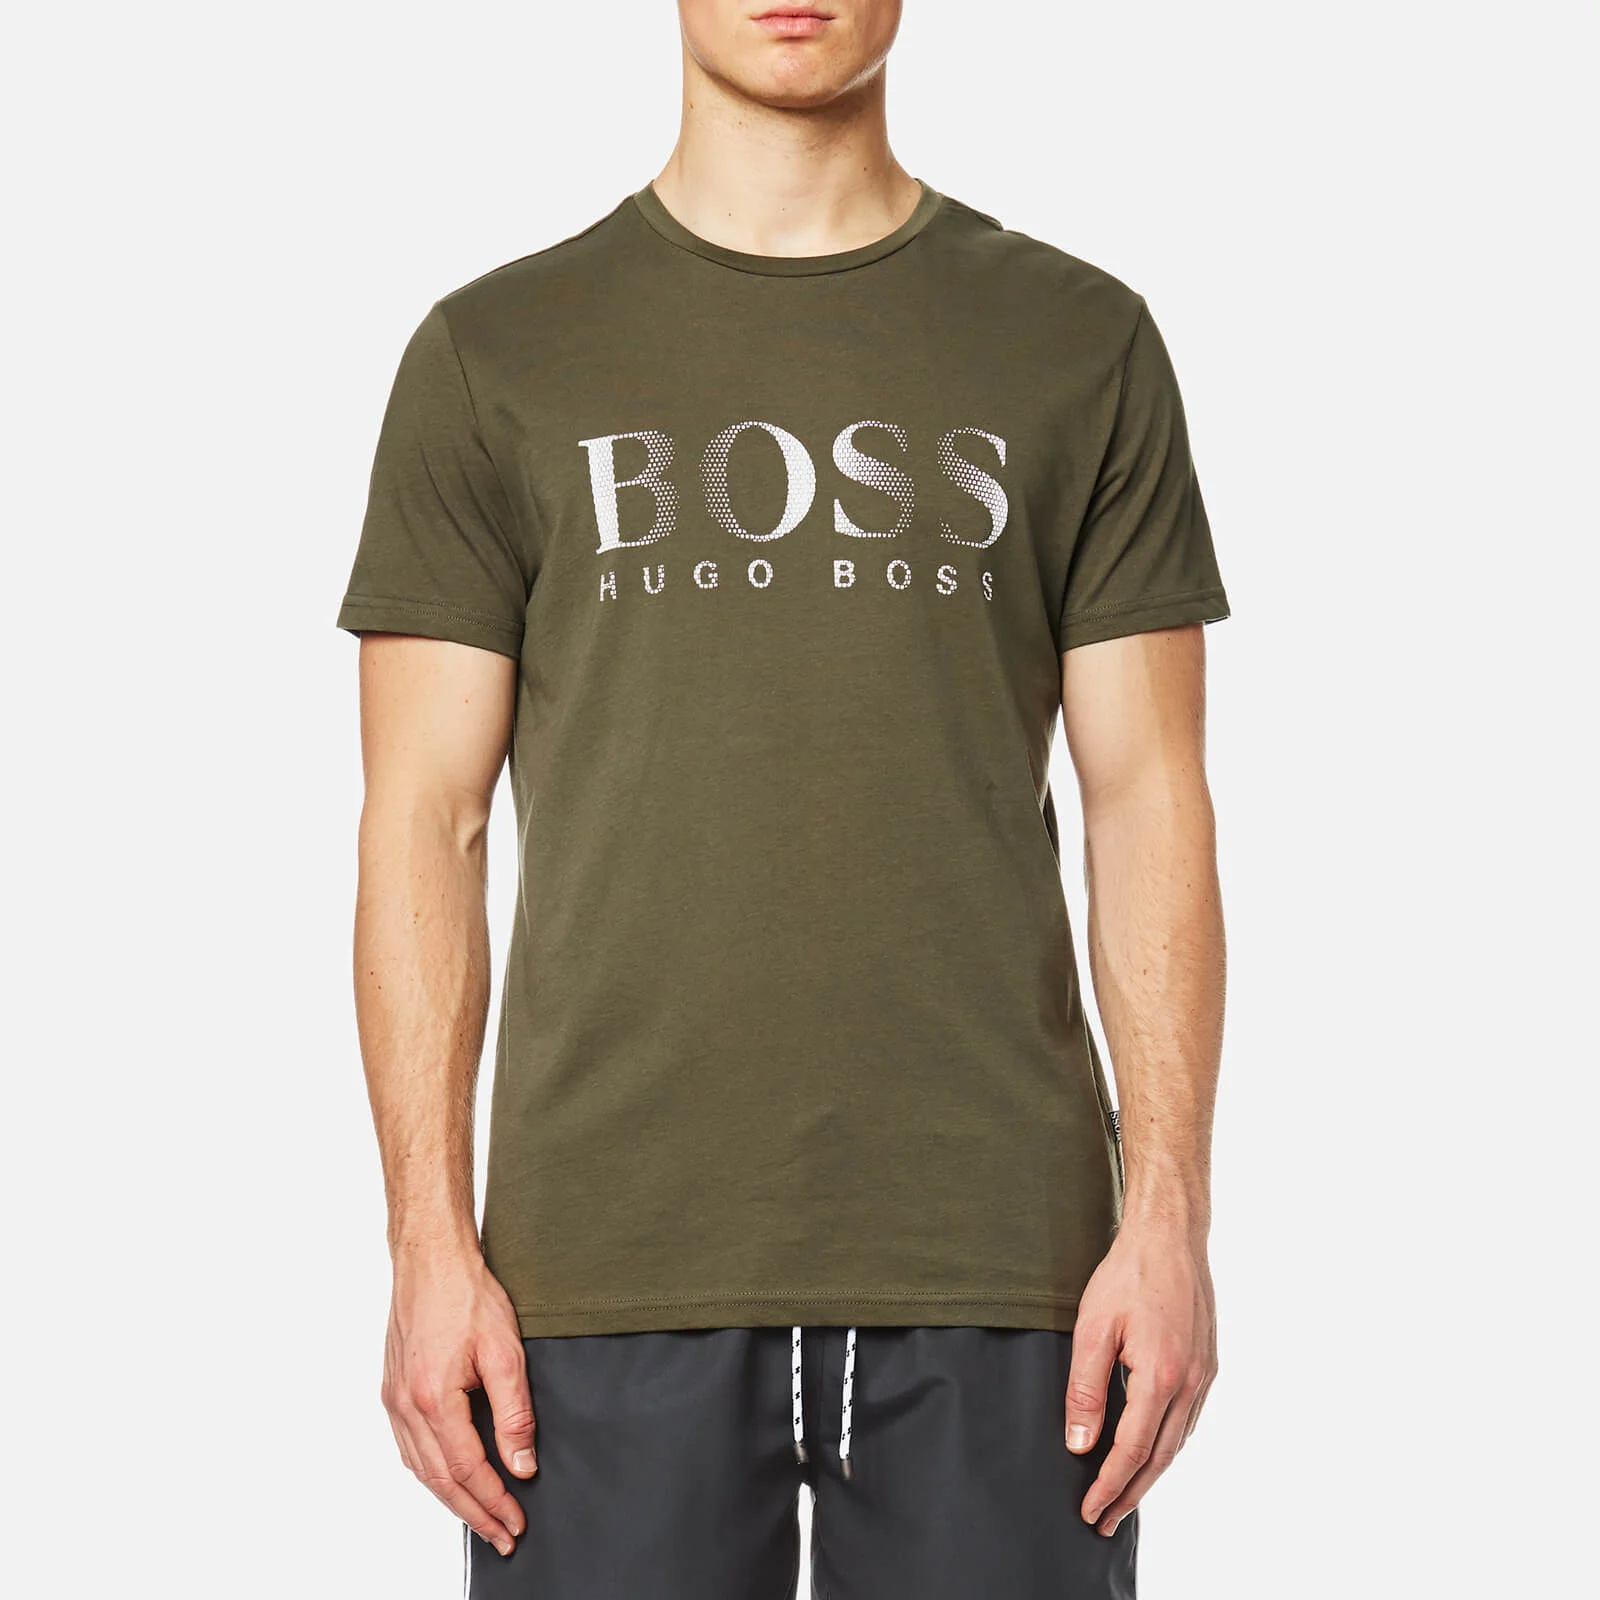 BOSS Hugo Boss Men's Large Logo Swim T-Shirt - Dark Green Image 1